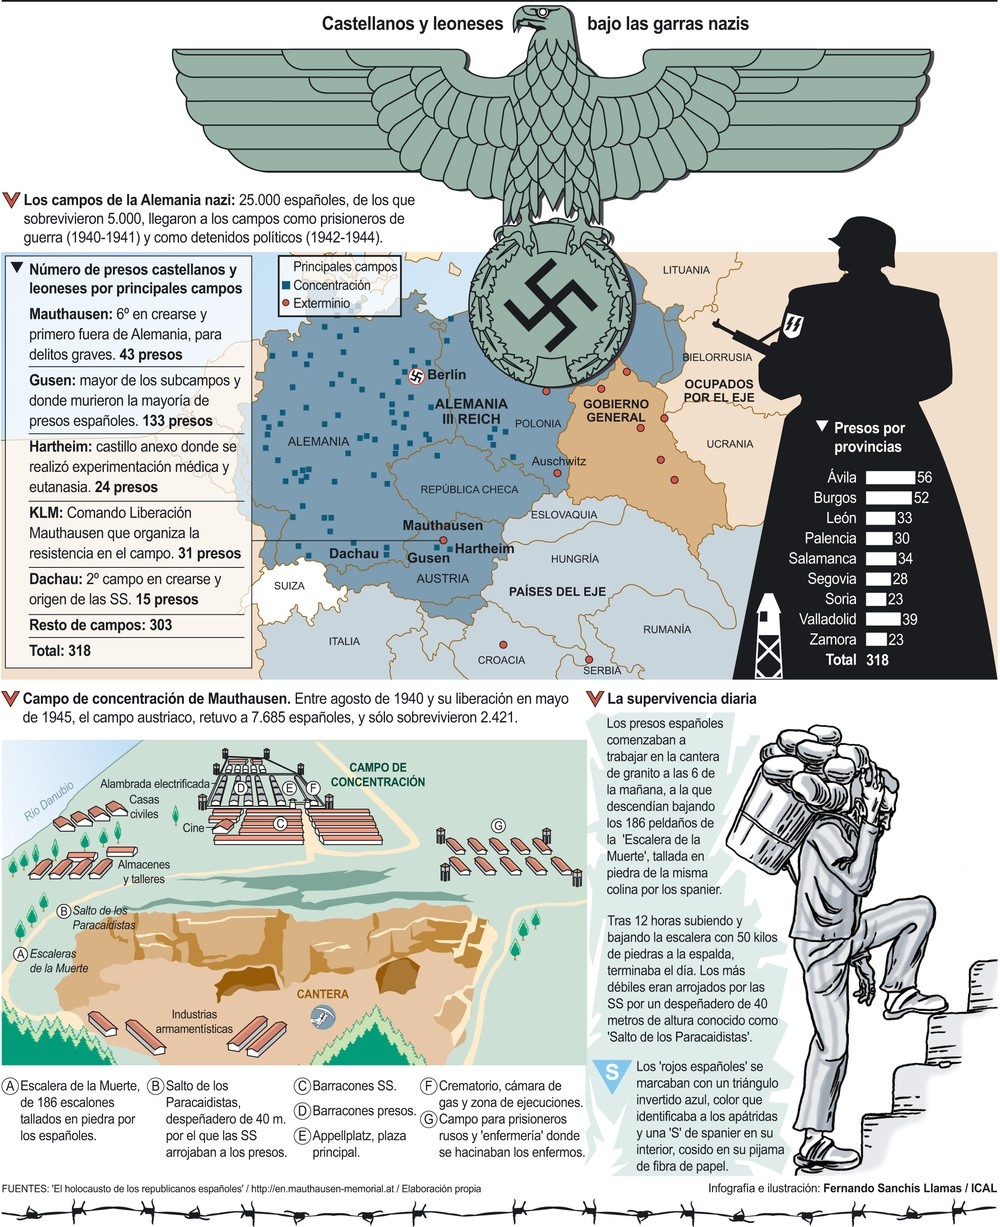 75 años de vidas truncadas por los nazis